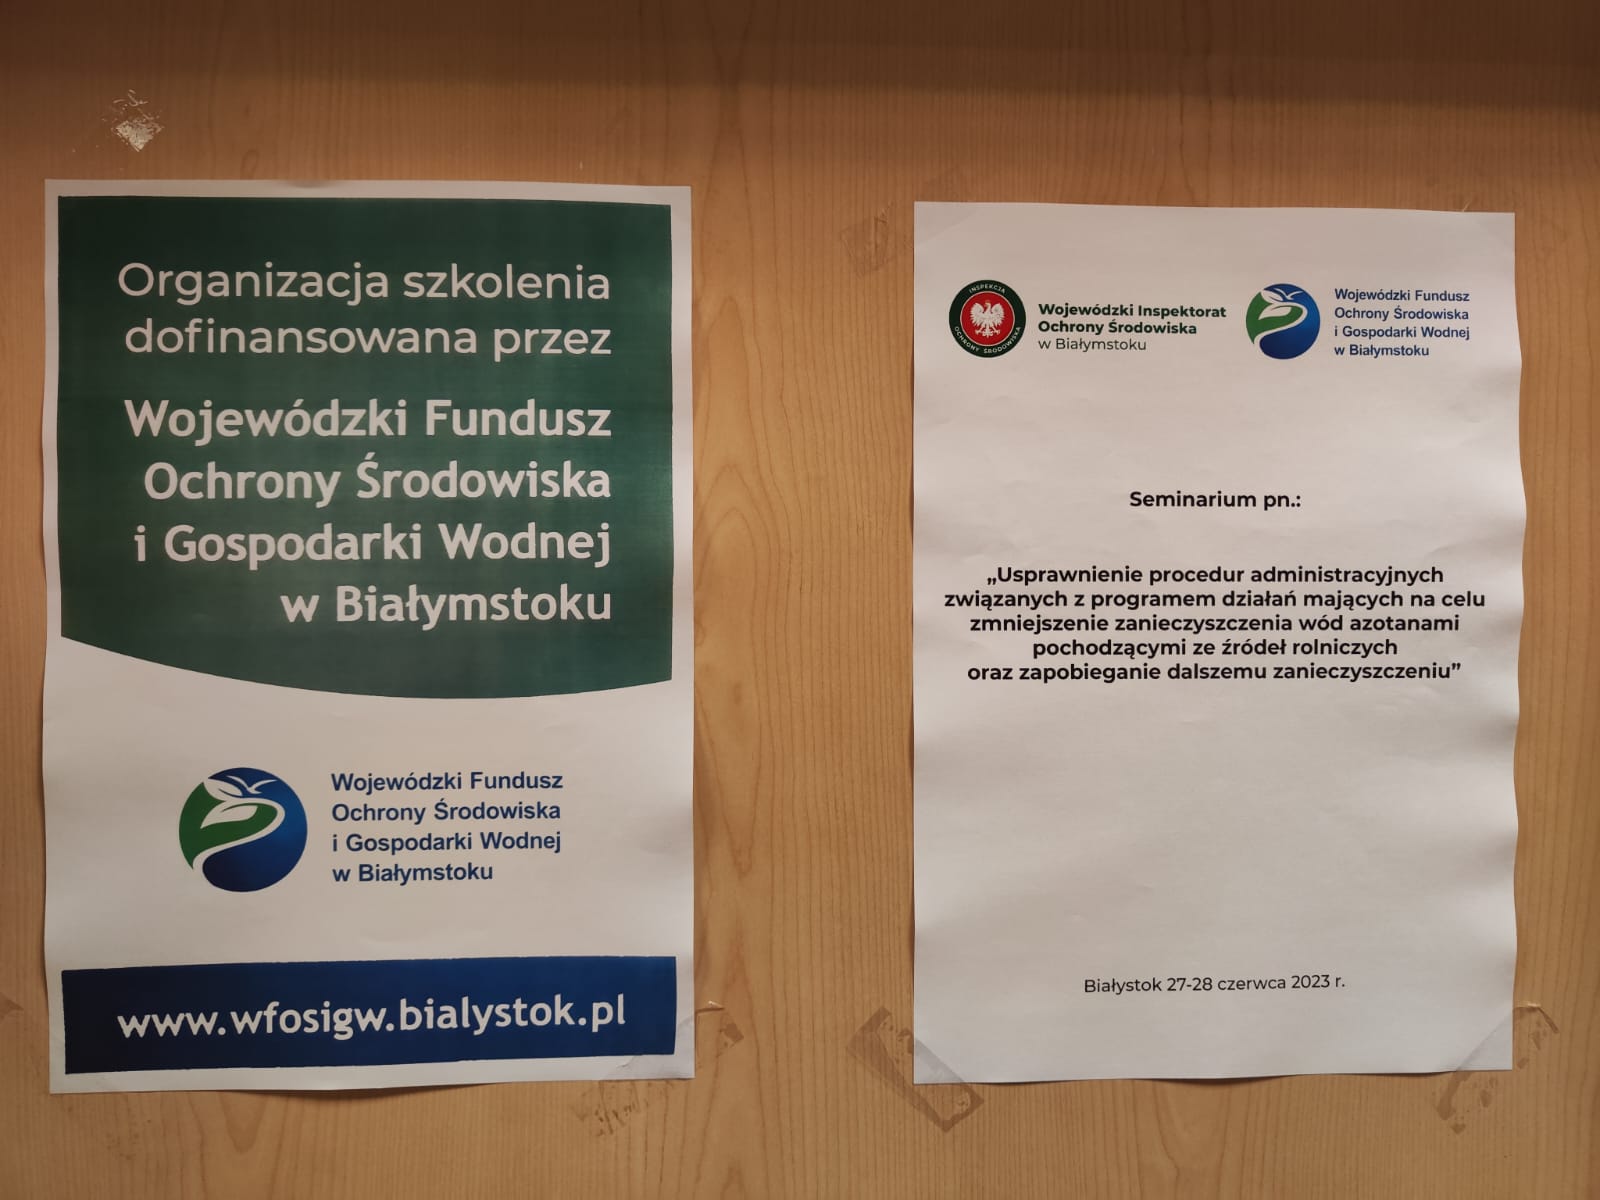 Plakaty zawieszone na drzwiach Sali konferencyjnej z tematem szkolenia oraz informacją dotyczącą źródła dofinansowania seminarium